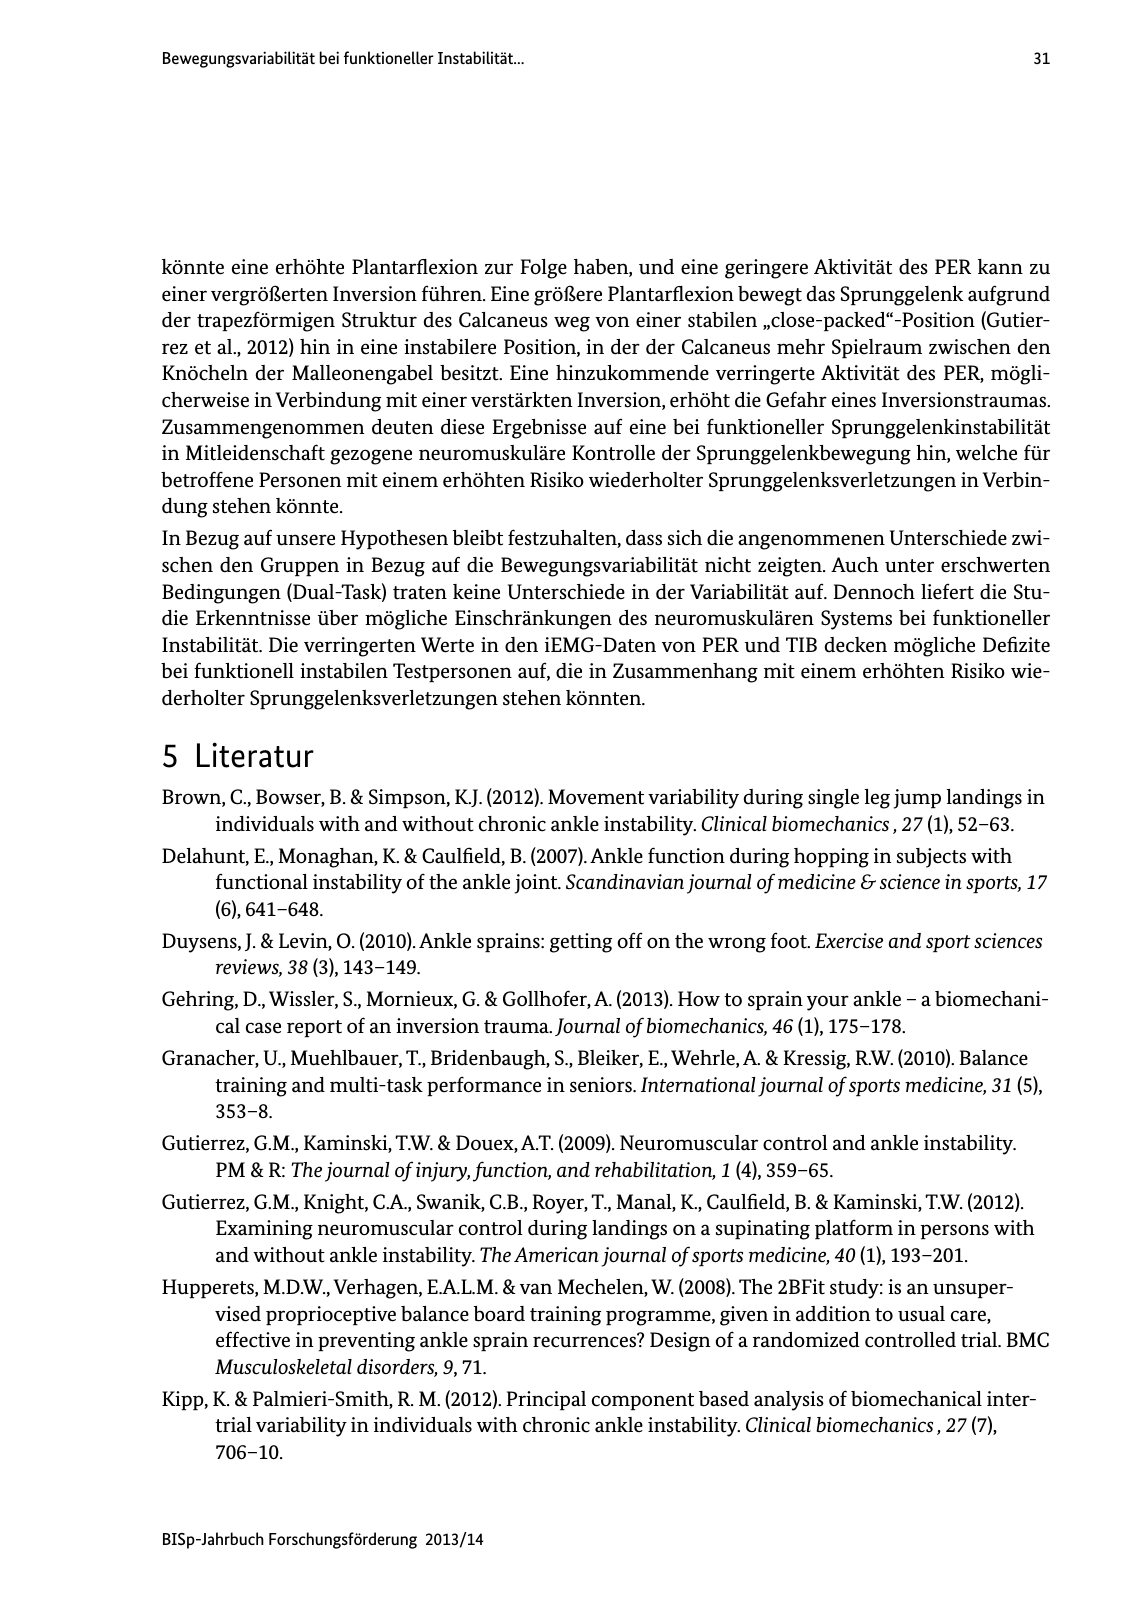 Vorschau BISp-Jahrbuch Forschungsförderung 2013/14 Seite 32